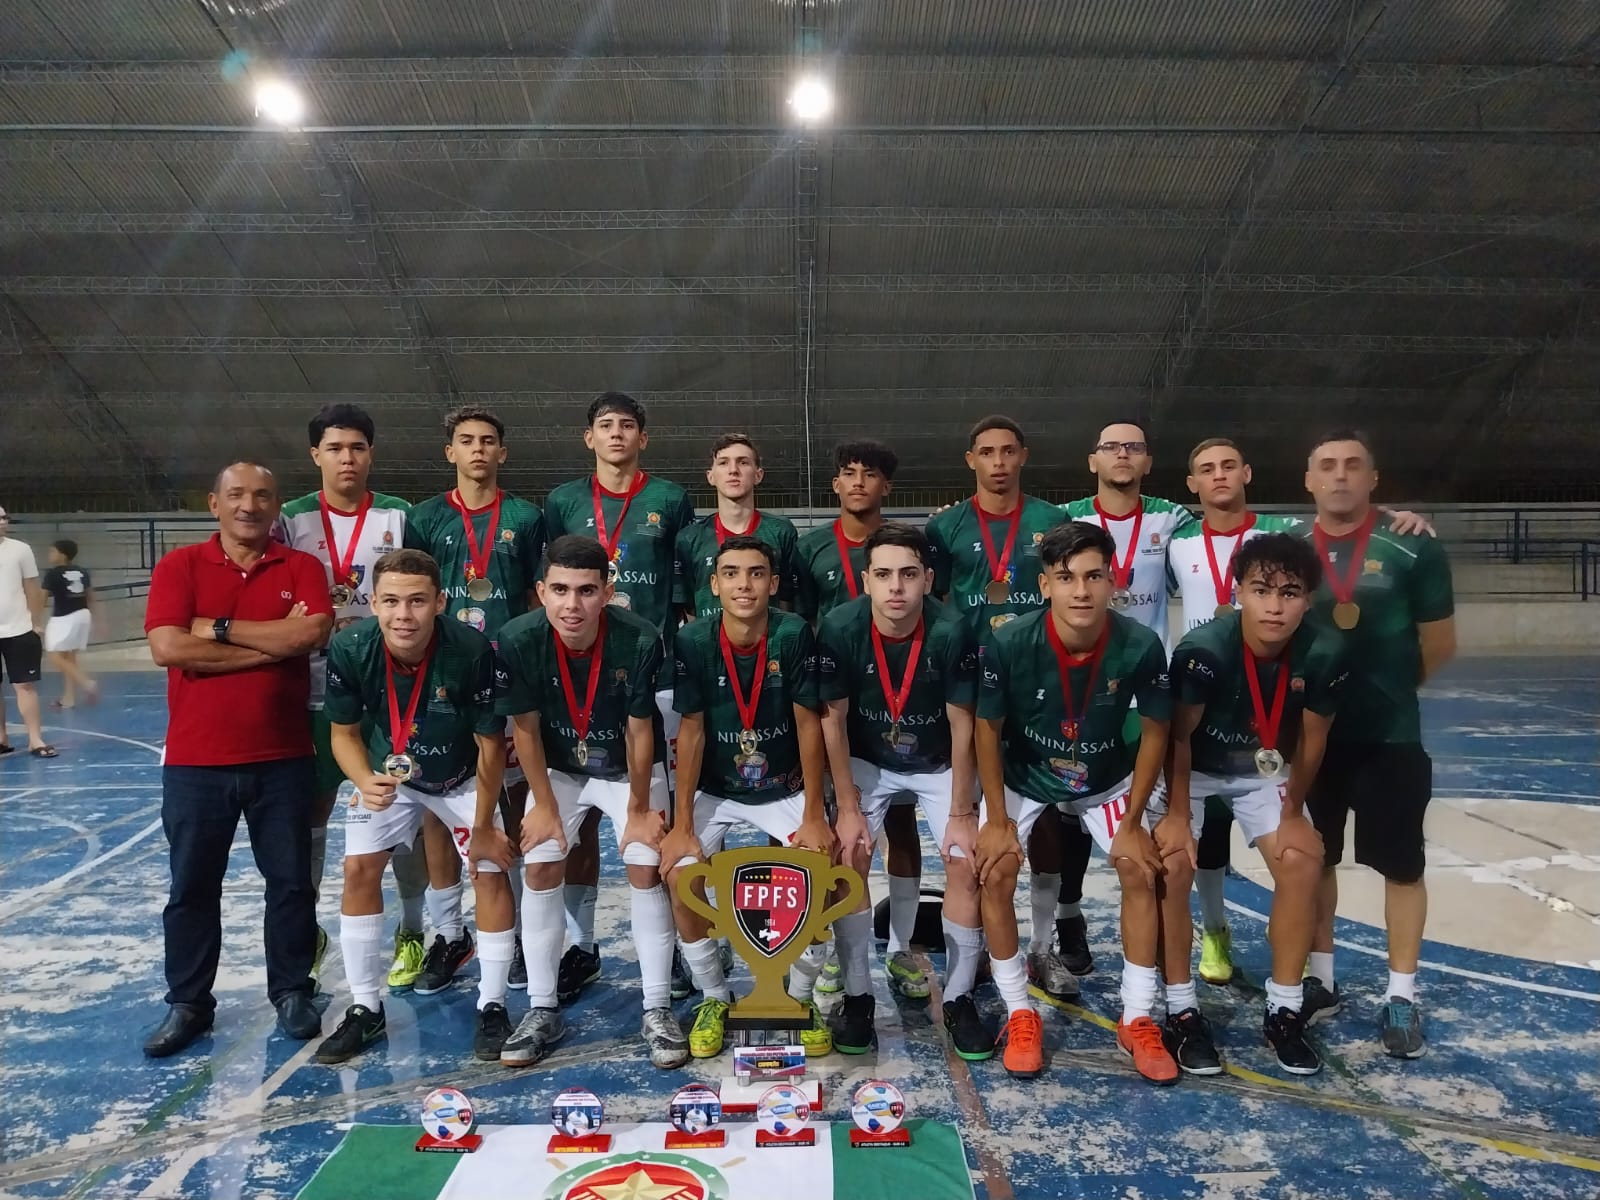 Clube dos Oficiais é campeão paraibano no futsal sub-16